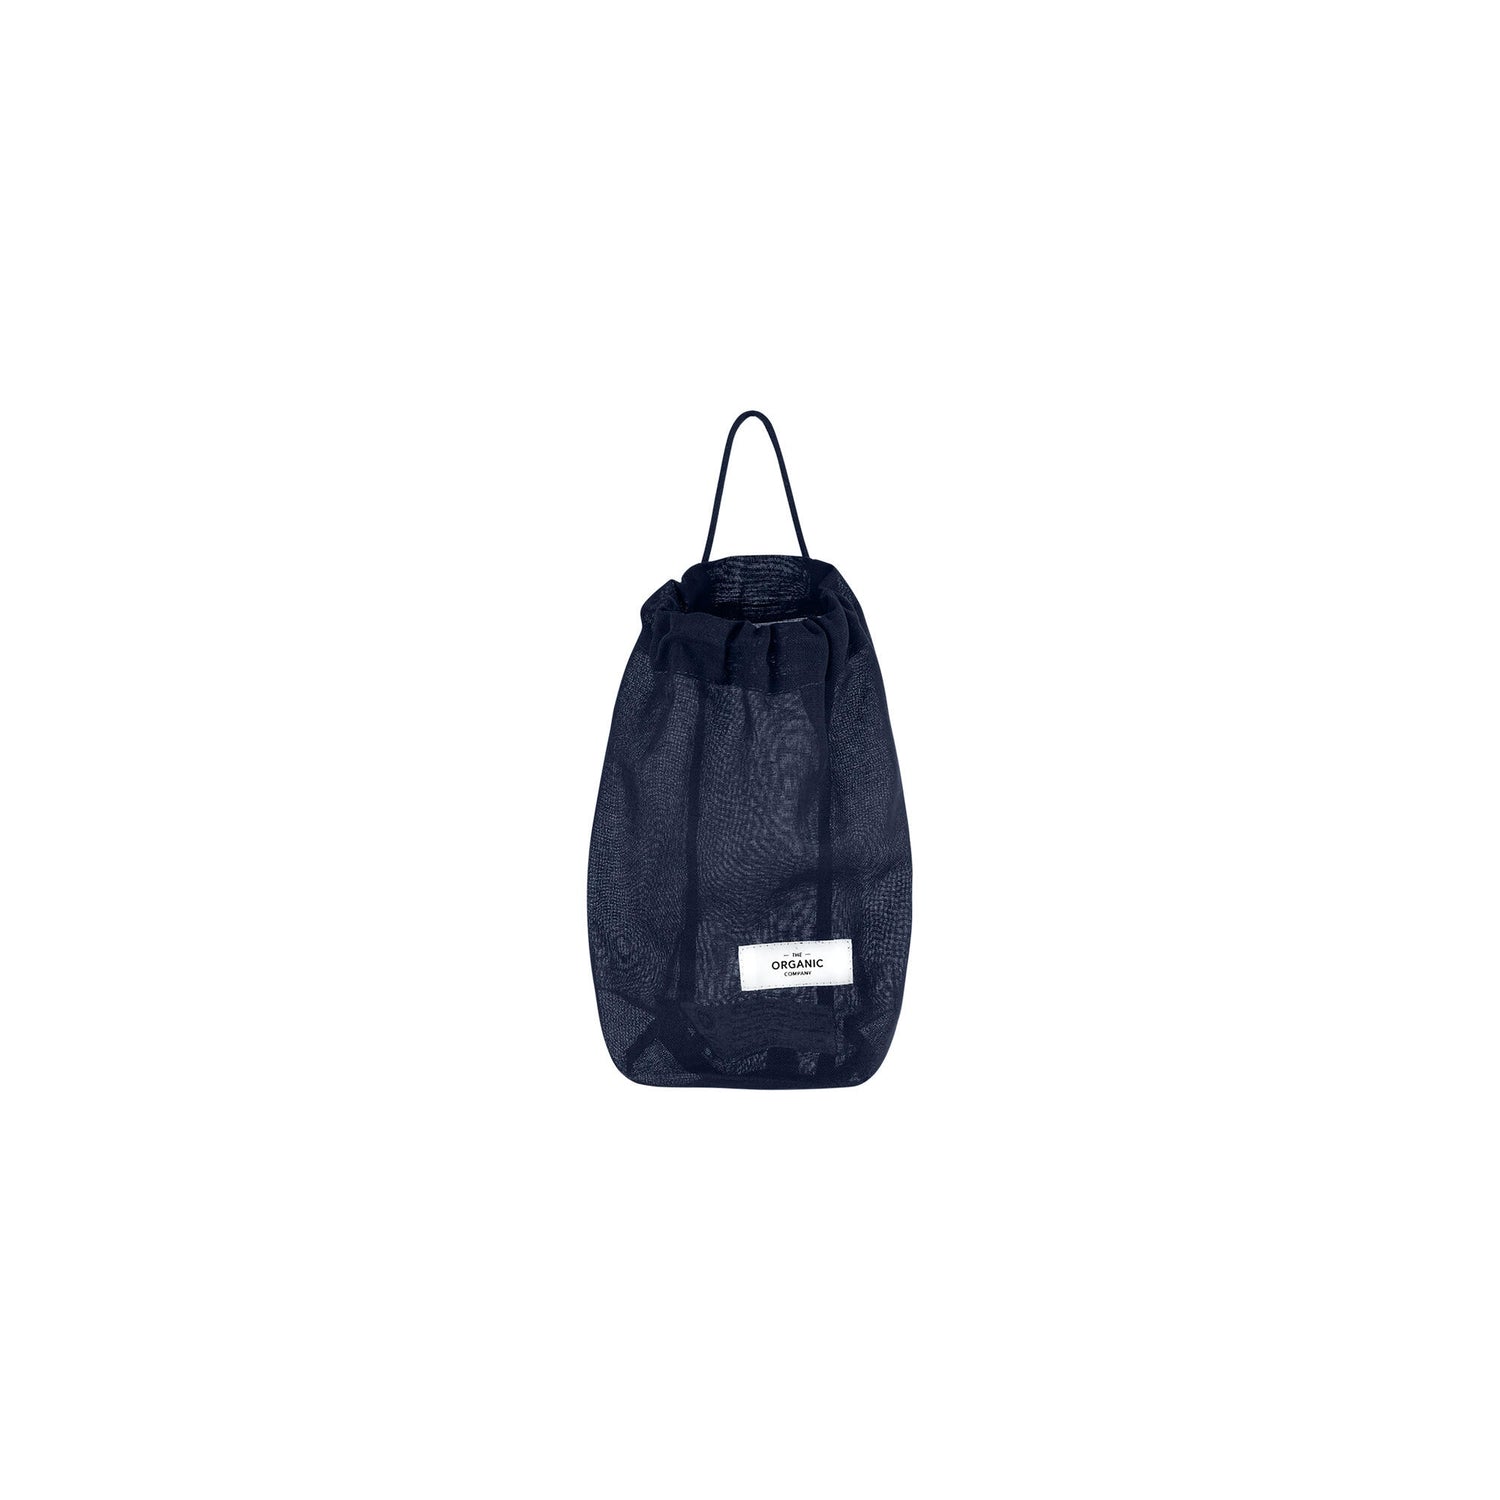 All Purpose Bag Small Dark Blue